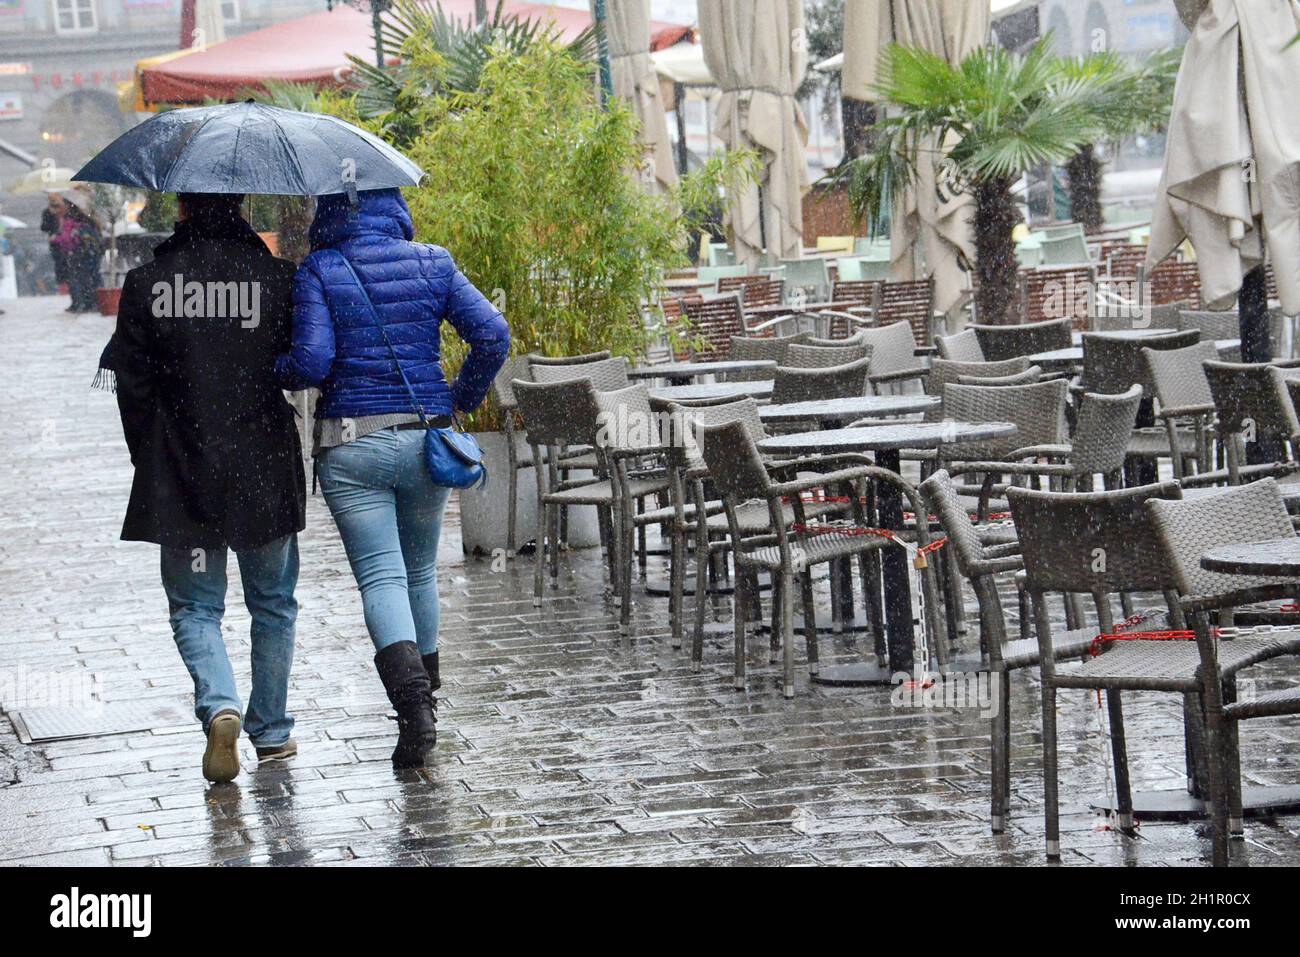 Regenwetter in der Stadt (Linz, Oberösterreich, Österreich) - Rainy weather in the city (Linz, Upper Austria, Austria) Stock Photo